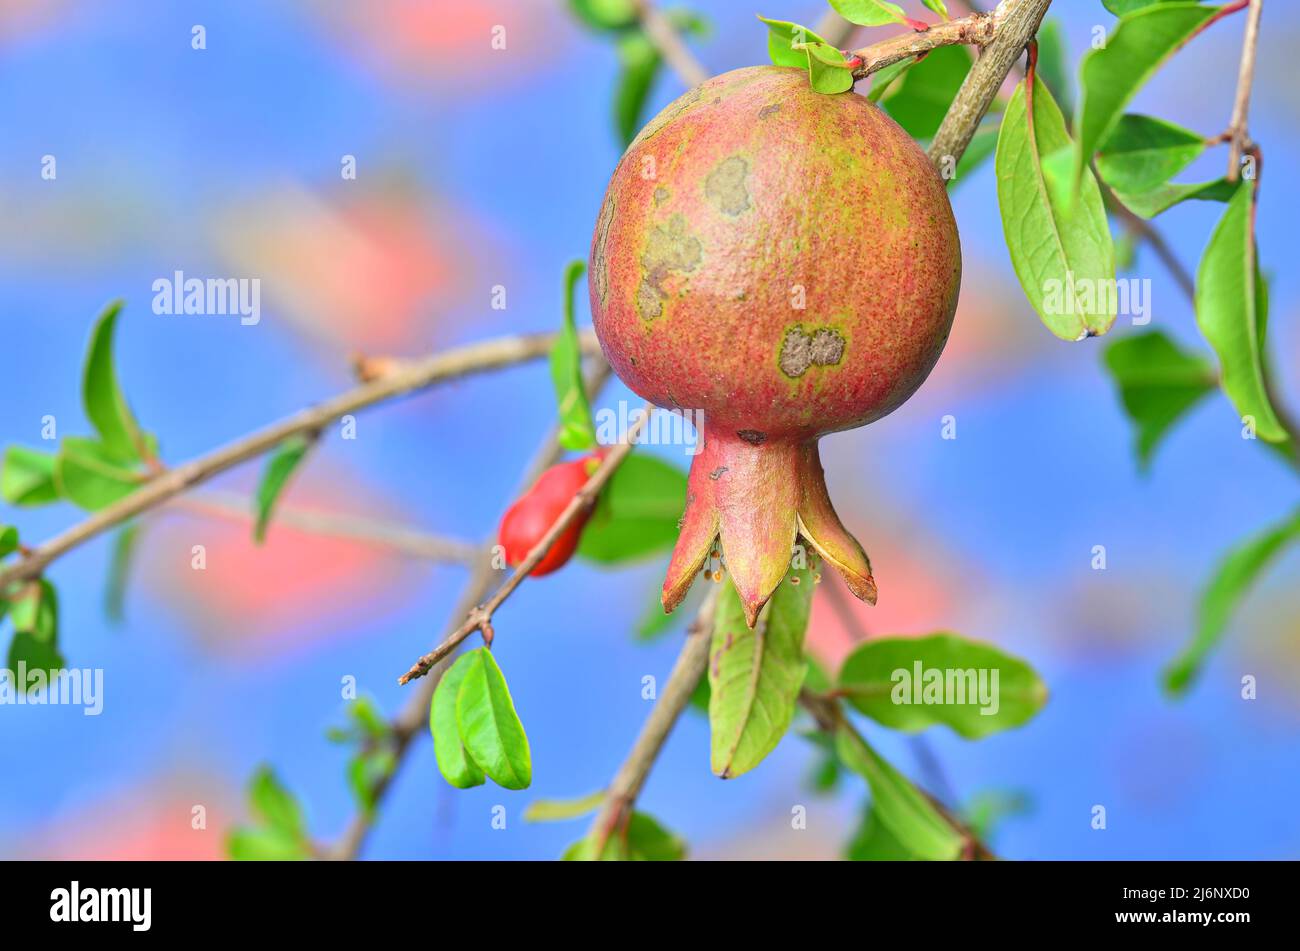 Fresh pomegranate on the tree Stock Photo